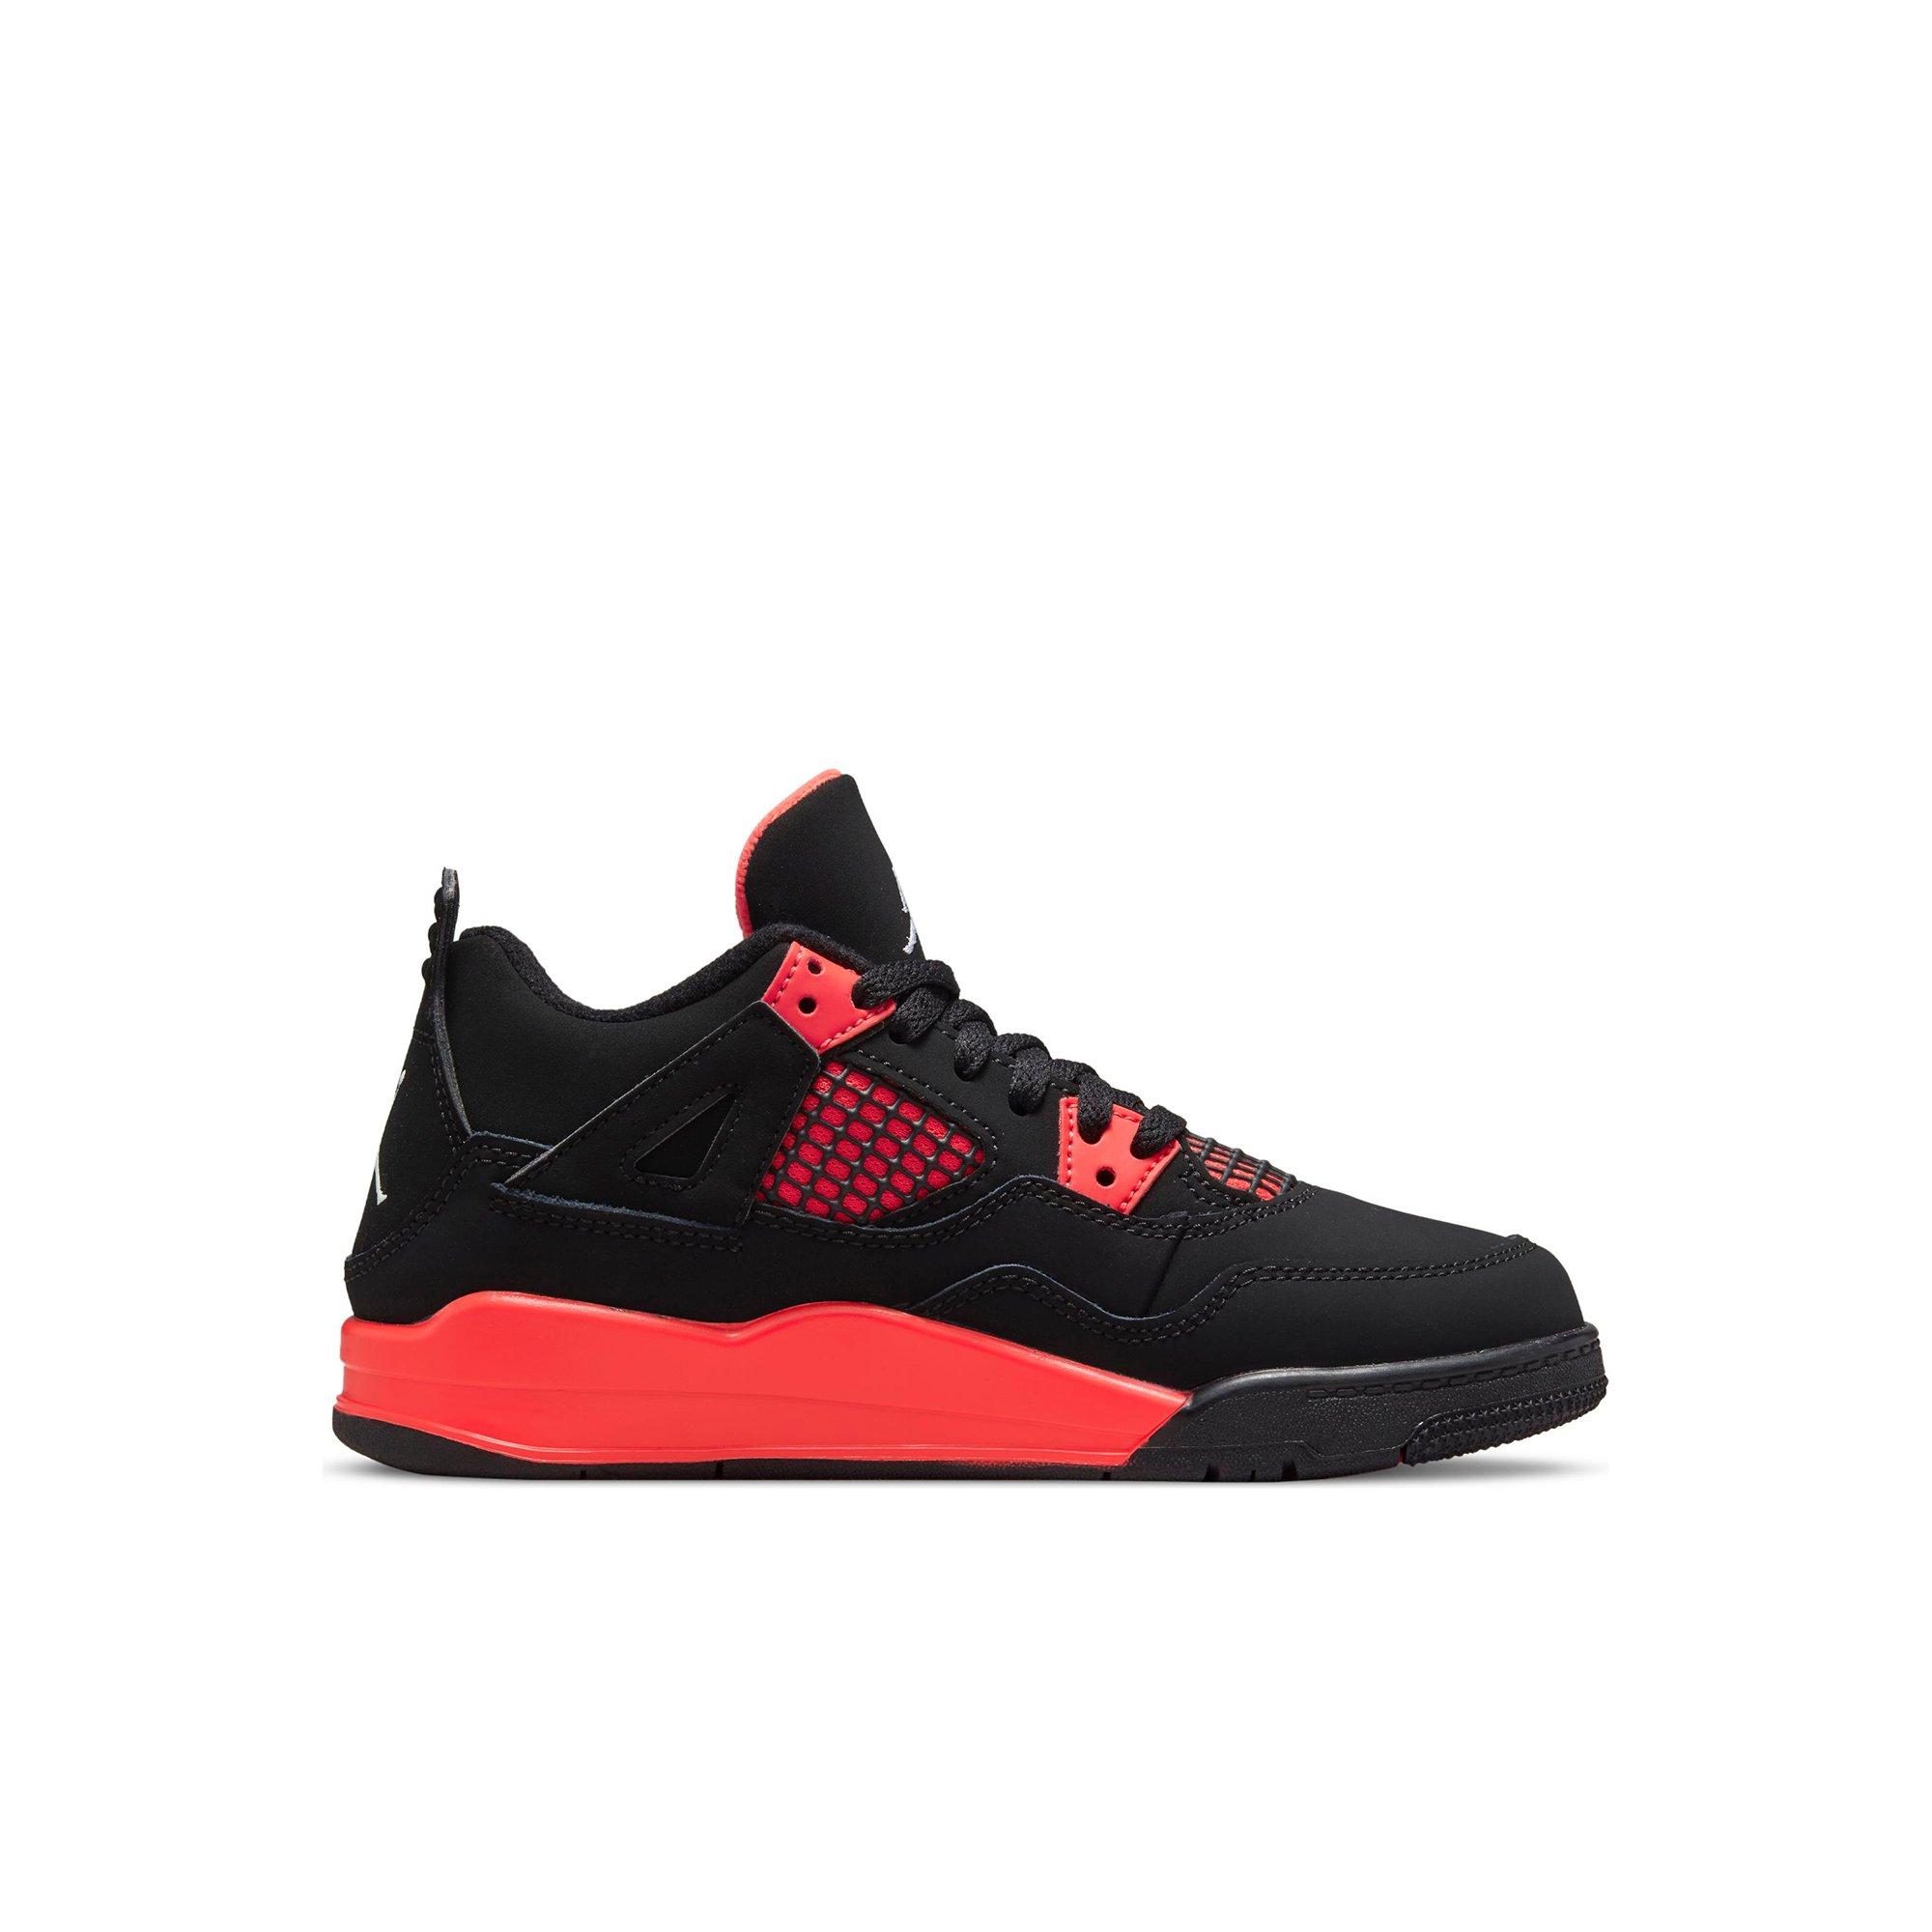 Trusted Kicks - Jordan 4 Black Cat 4s Size 11.5 